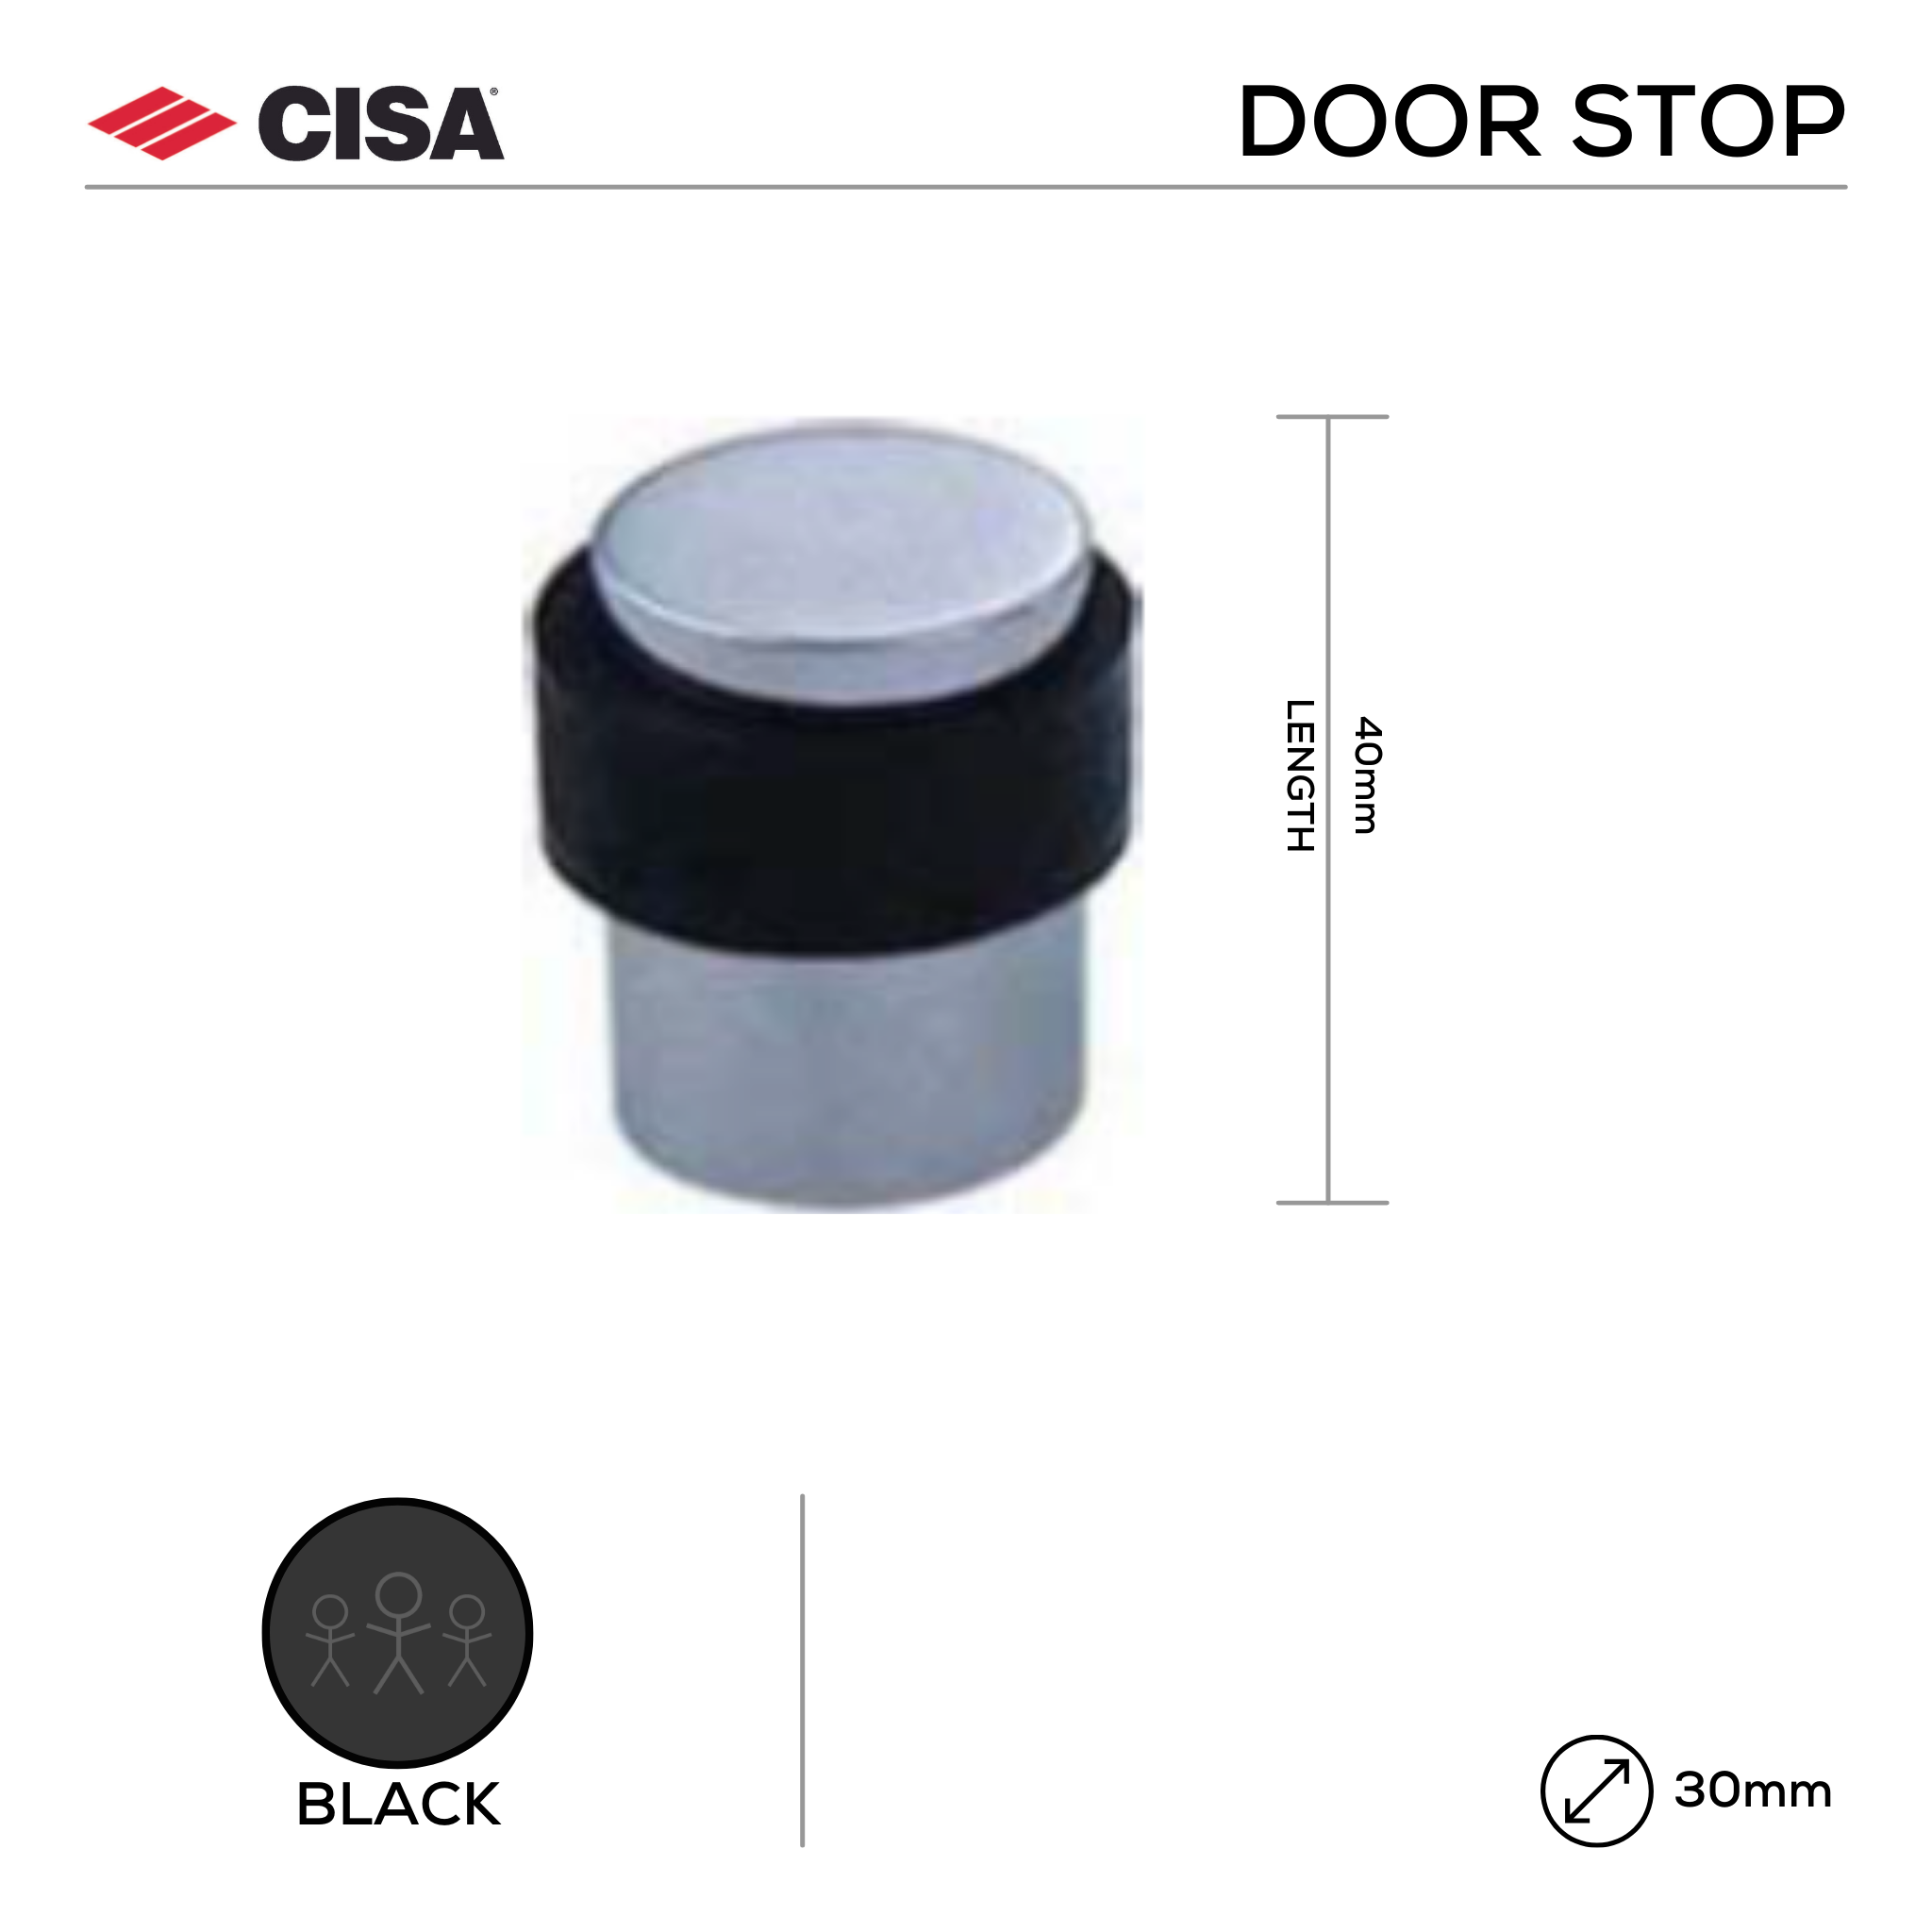 FDO6.BL, Door Stop, Floor Mounted, Round, 40mm (l) x 30mm (Ø), Black, CISA